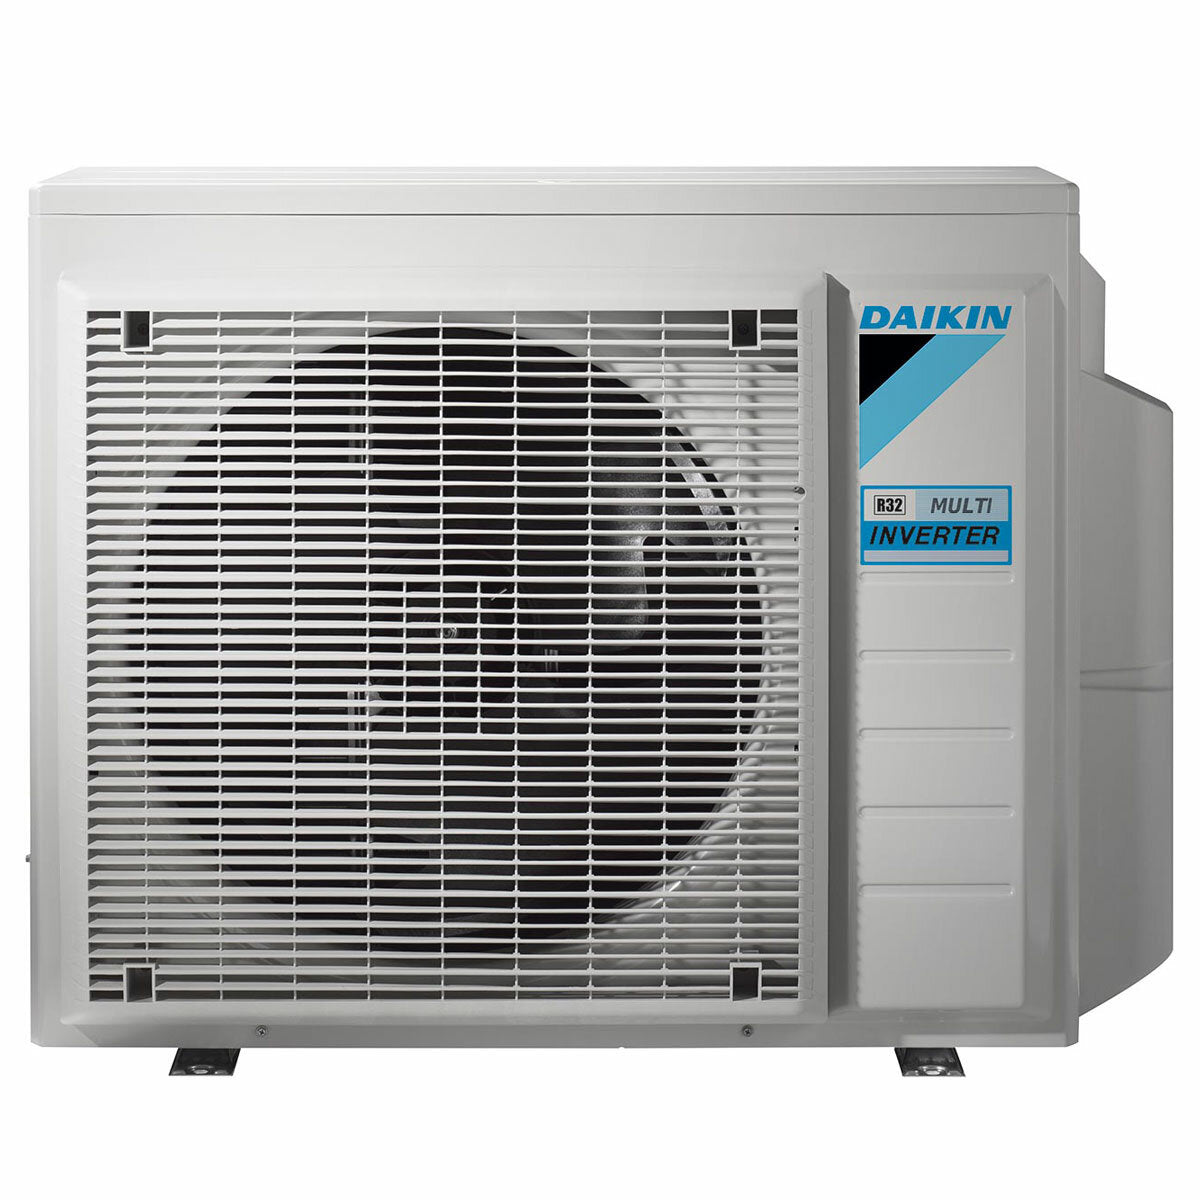 Daikin Emura air conditioner 3 split panels 9000 + 9000 + 12000 + 18000 BTU inverter A + wifi outdoor unit 7.8 kW Black